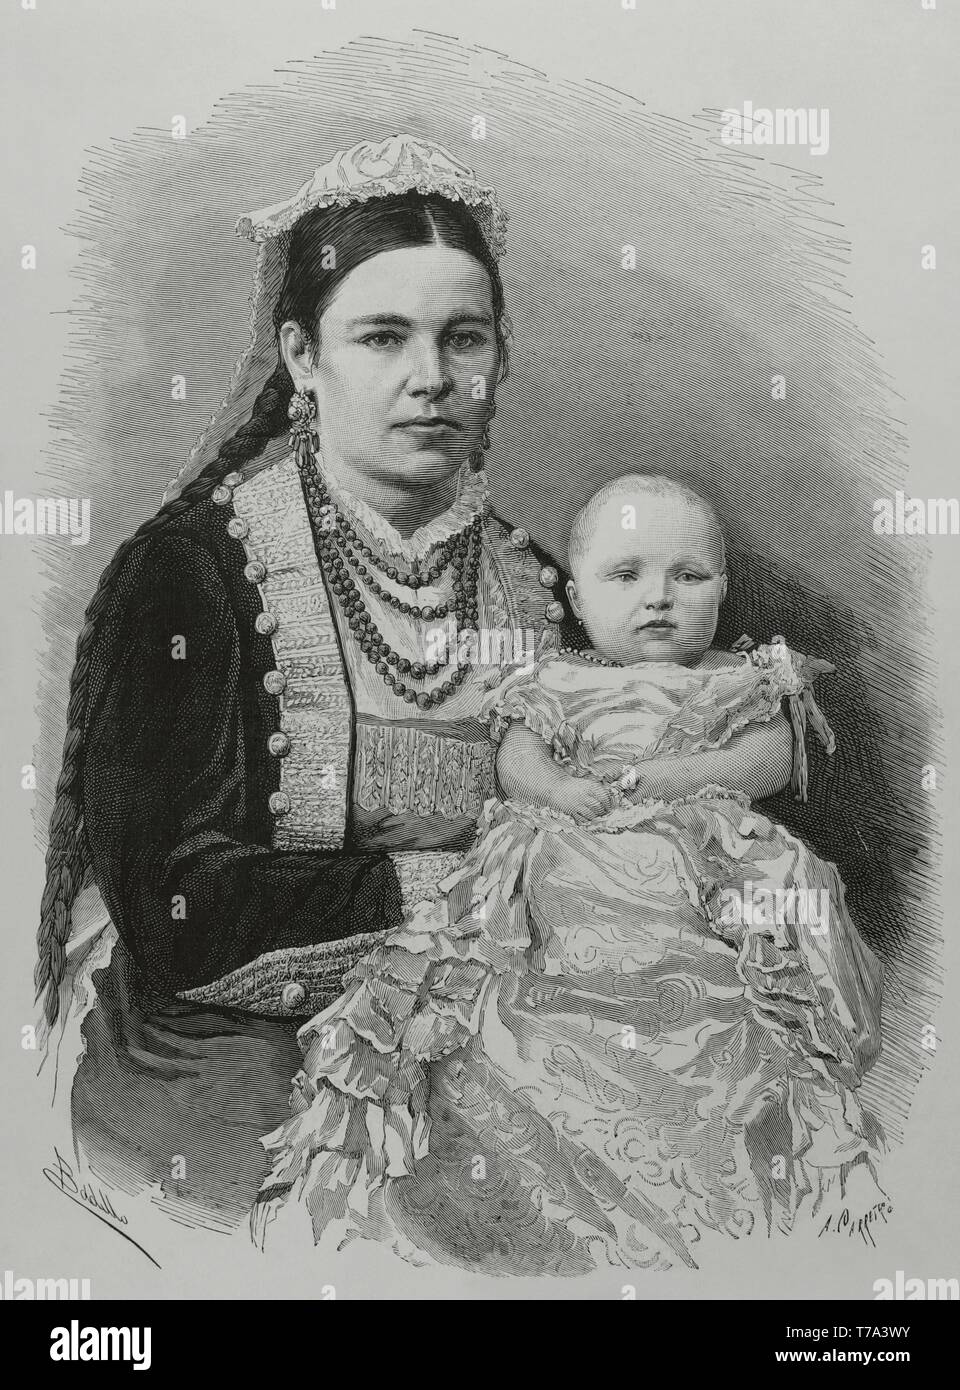 María de las Mercedes de Borbón y Habsburgo-Lorena (1880-1904). Infanta de  España y Princesa de Asturias. S. A. R. la infanta heredera, Doña Maria de  las Mercedes, en brazos de una nodriza.